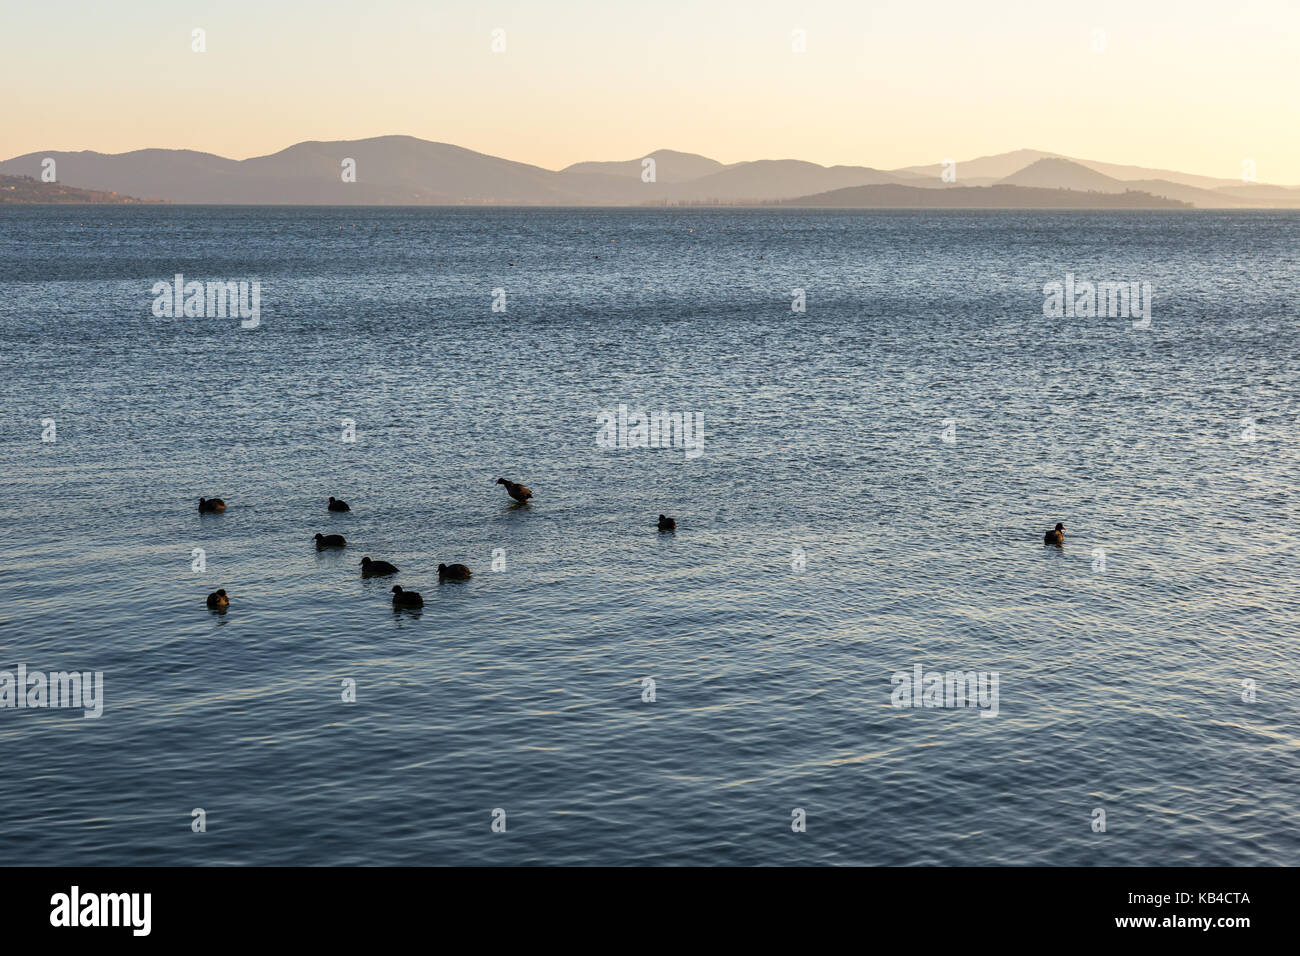 Un lac au coucher du soleil, avec quelques canards sur l'eau bleue et les collines au loin et tons chaleureux à la distance Banque D'Images